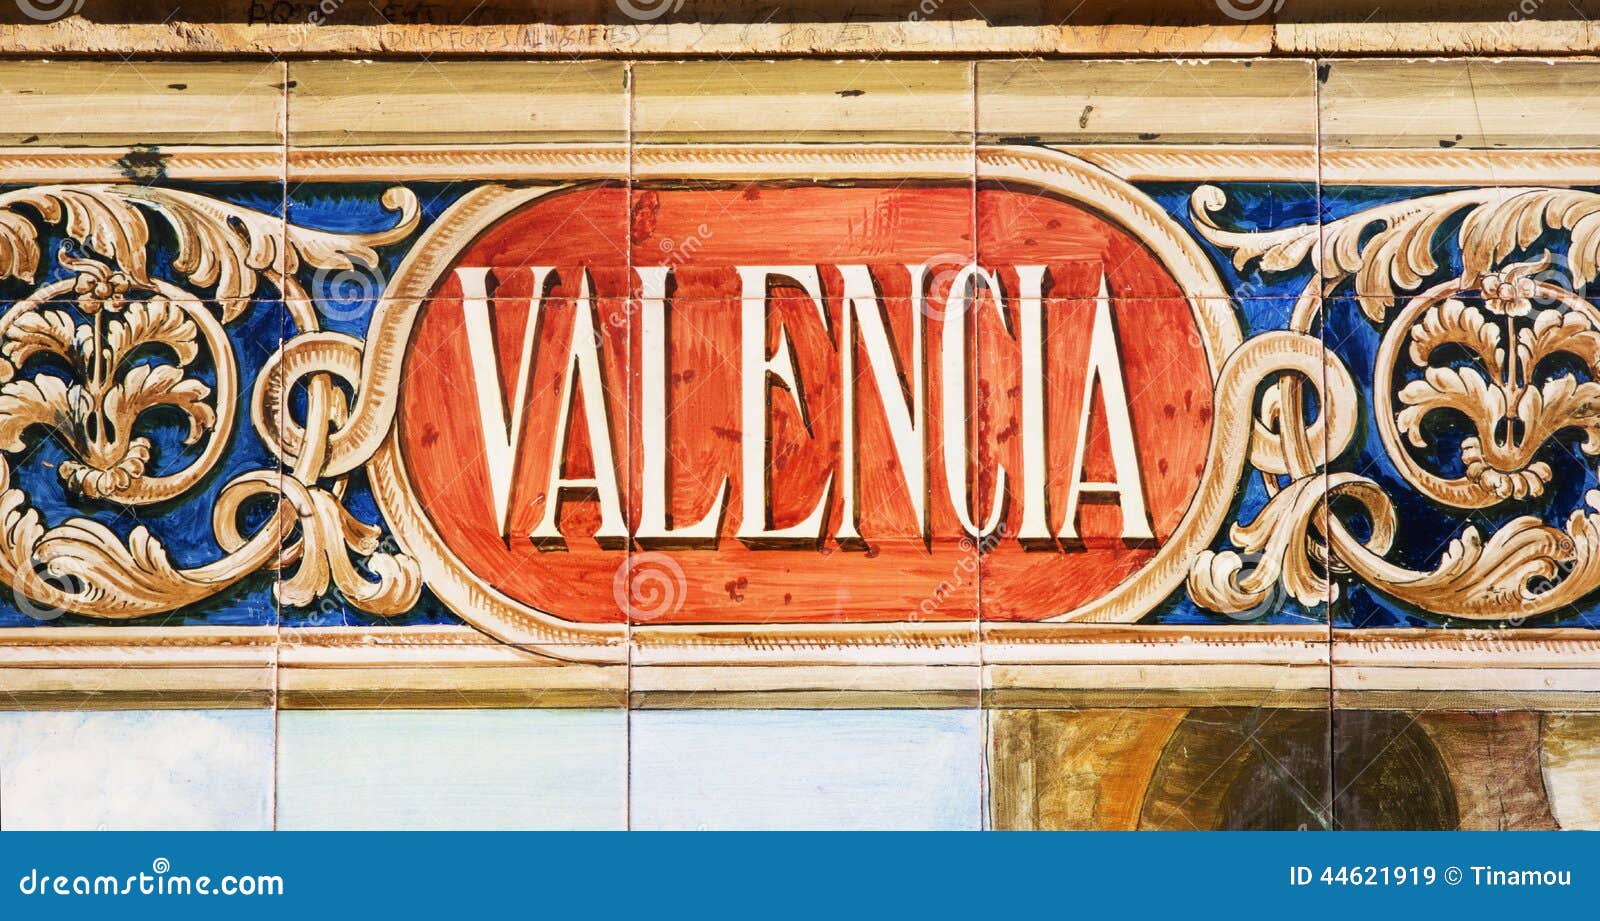 valencia written on azulejos